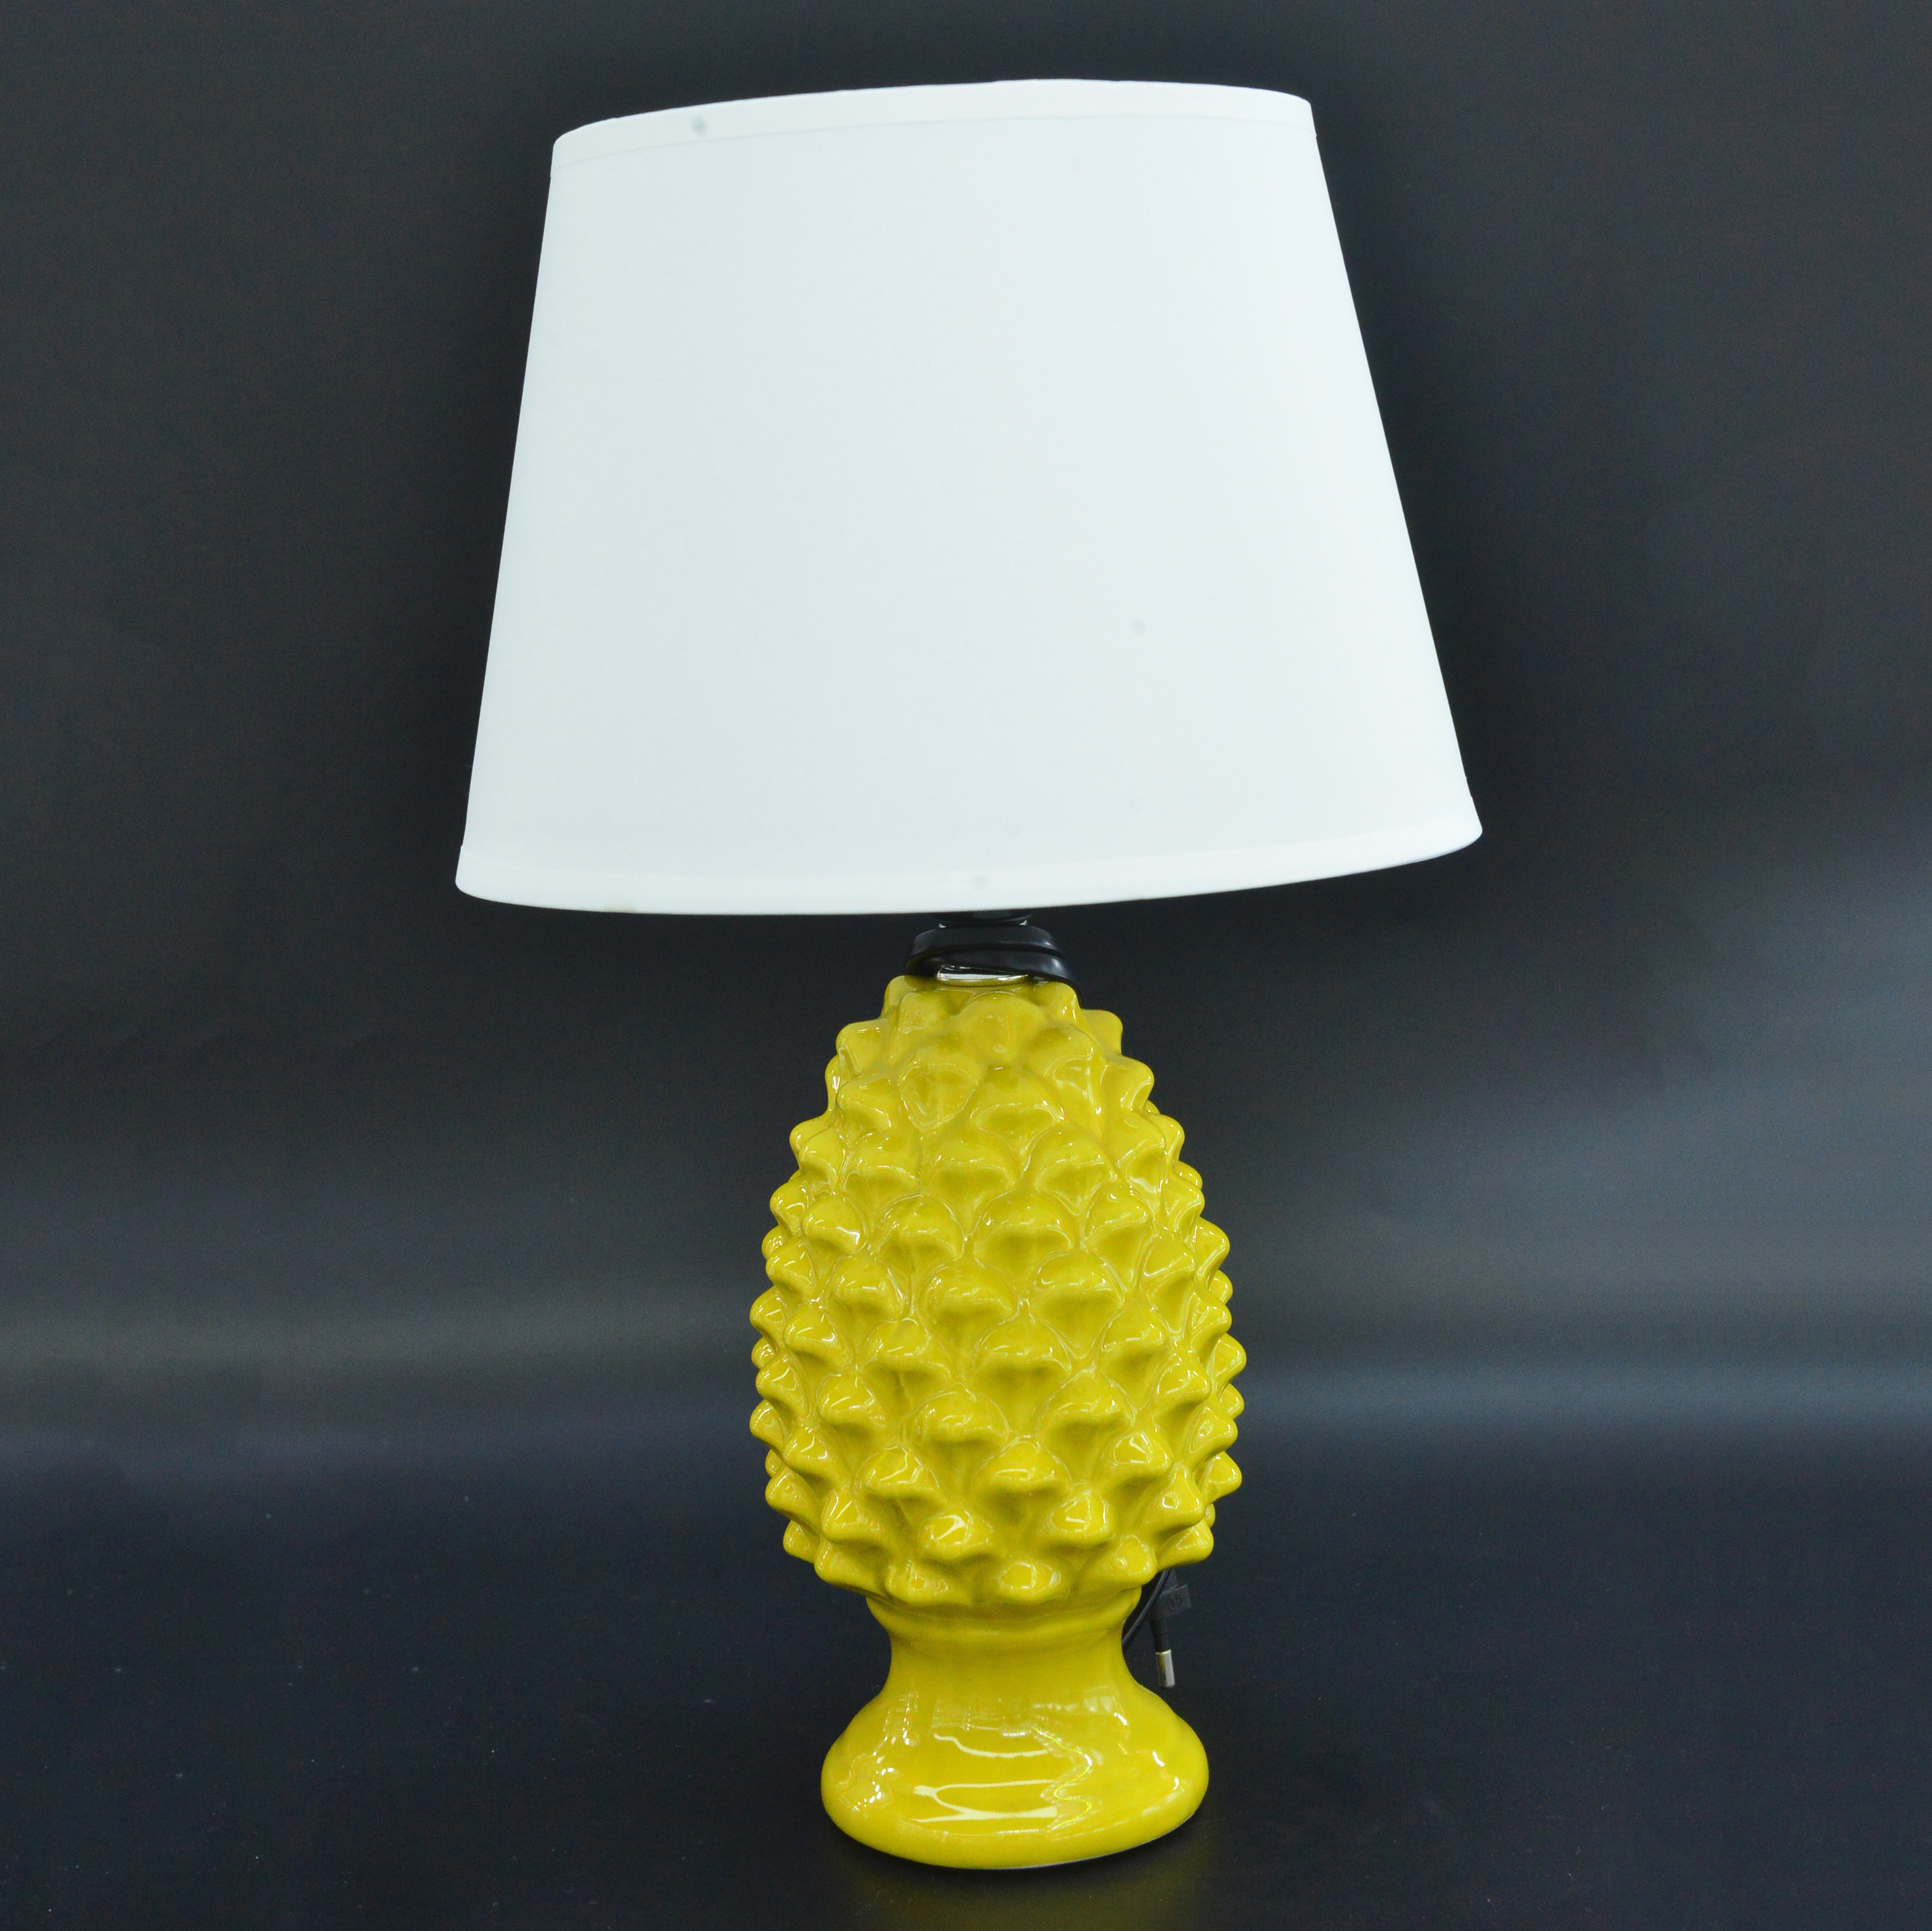 梨黄色菠萝系列陶瓷台灯  记连台灯 24件起批